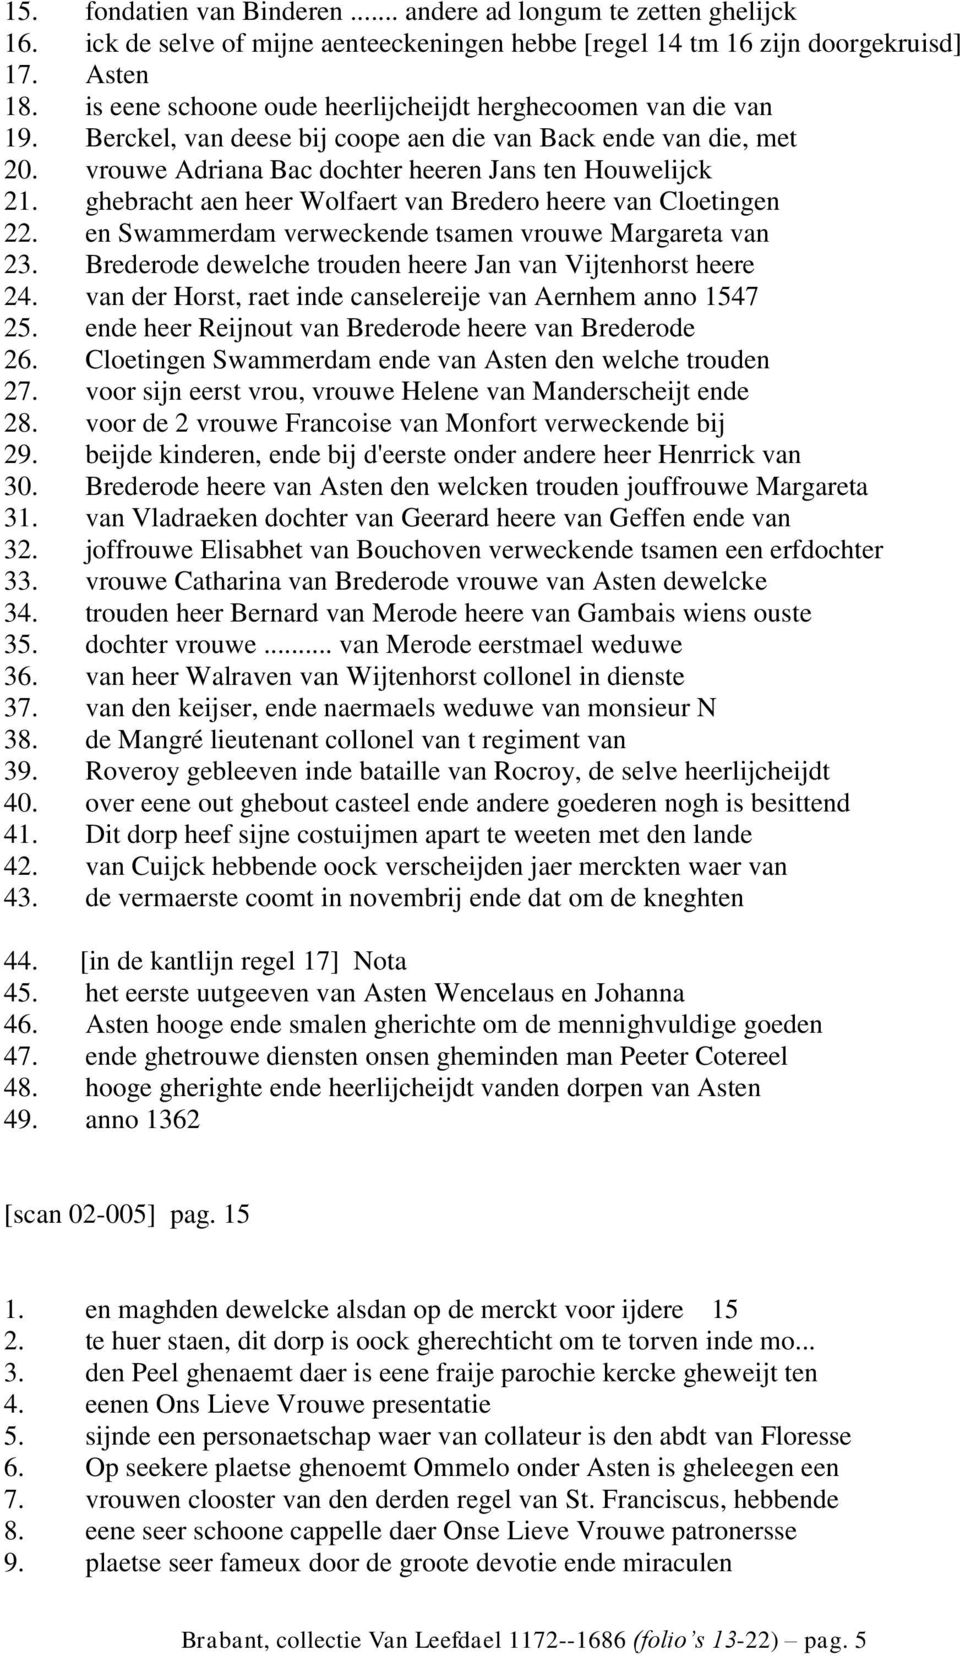 ghebracht aen heer Wolfaert van Bredero heere van Cloetingen 22. en Swammerdam verweckende tsamen vrouwe Margareta van 23. Brederode dewelche trouden heere Jan van Vijtenhorst heere 24.